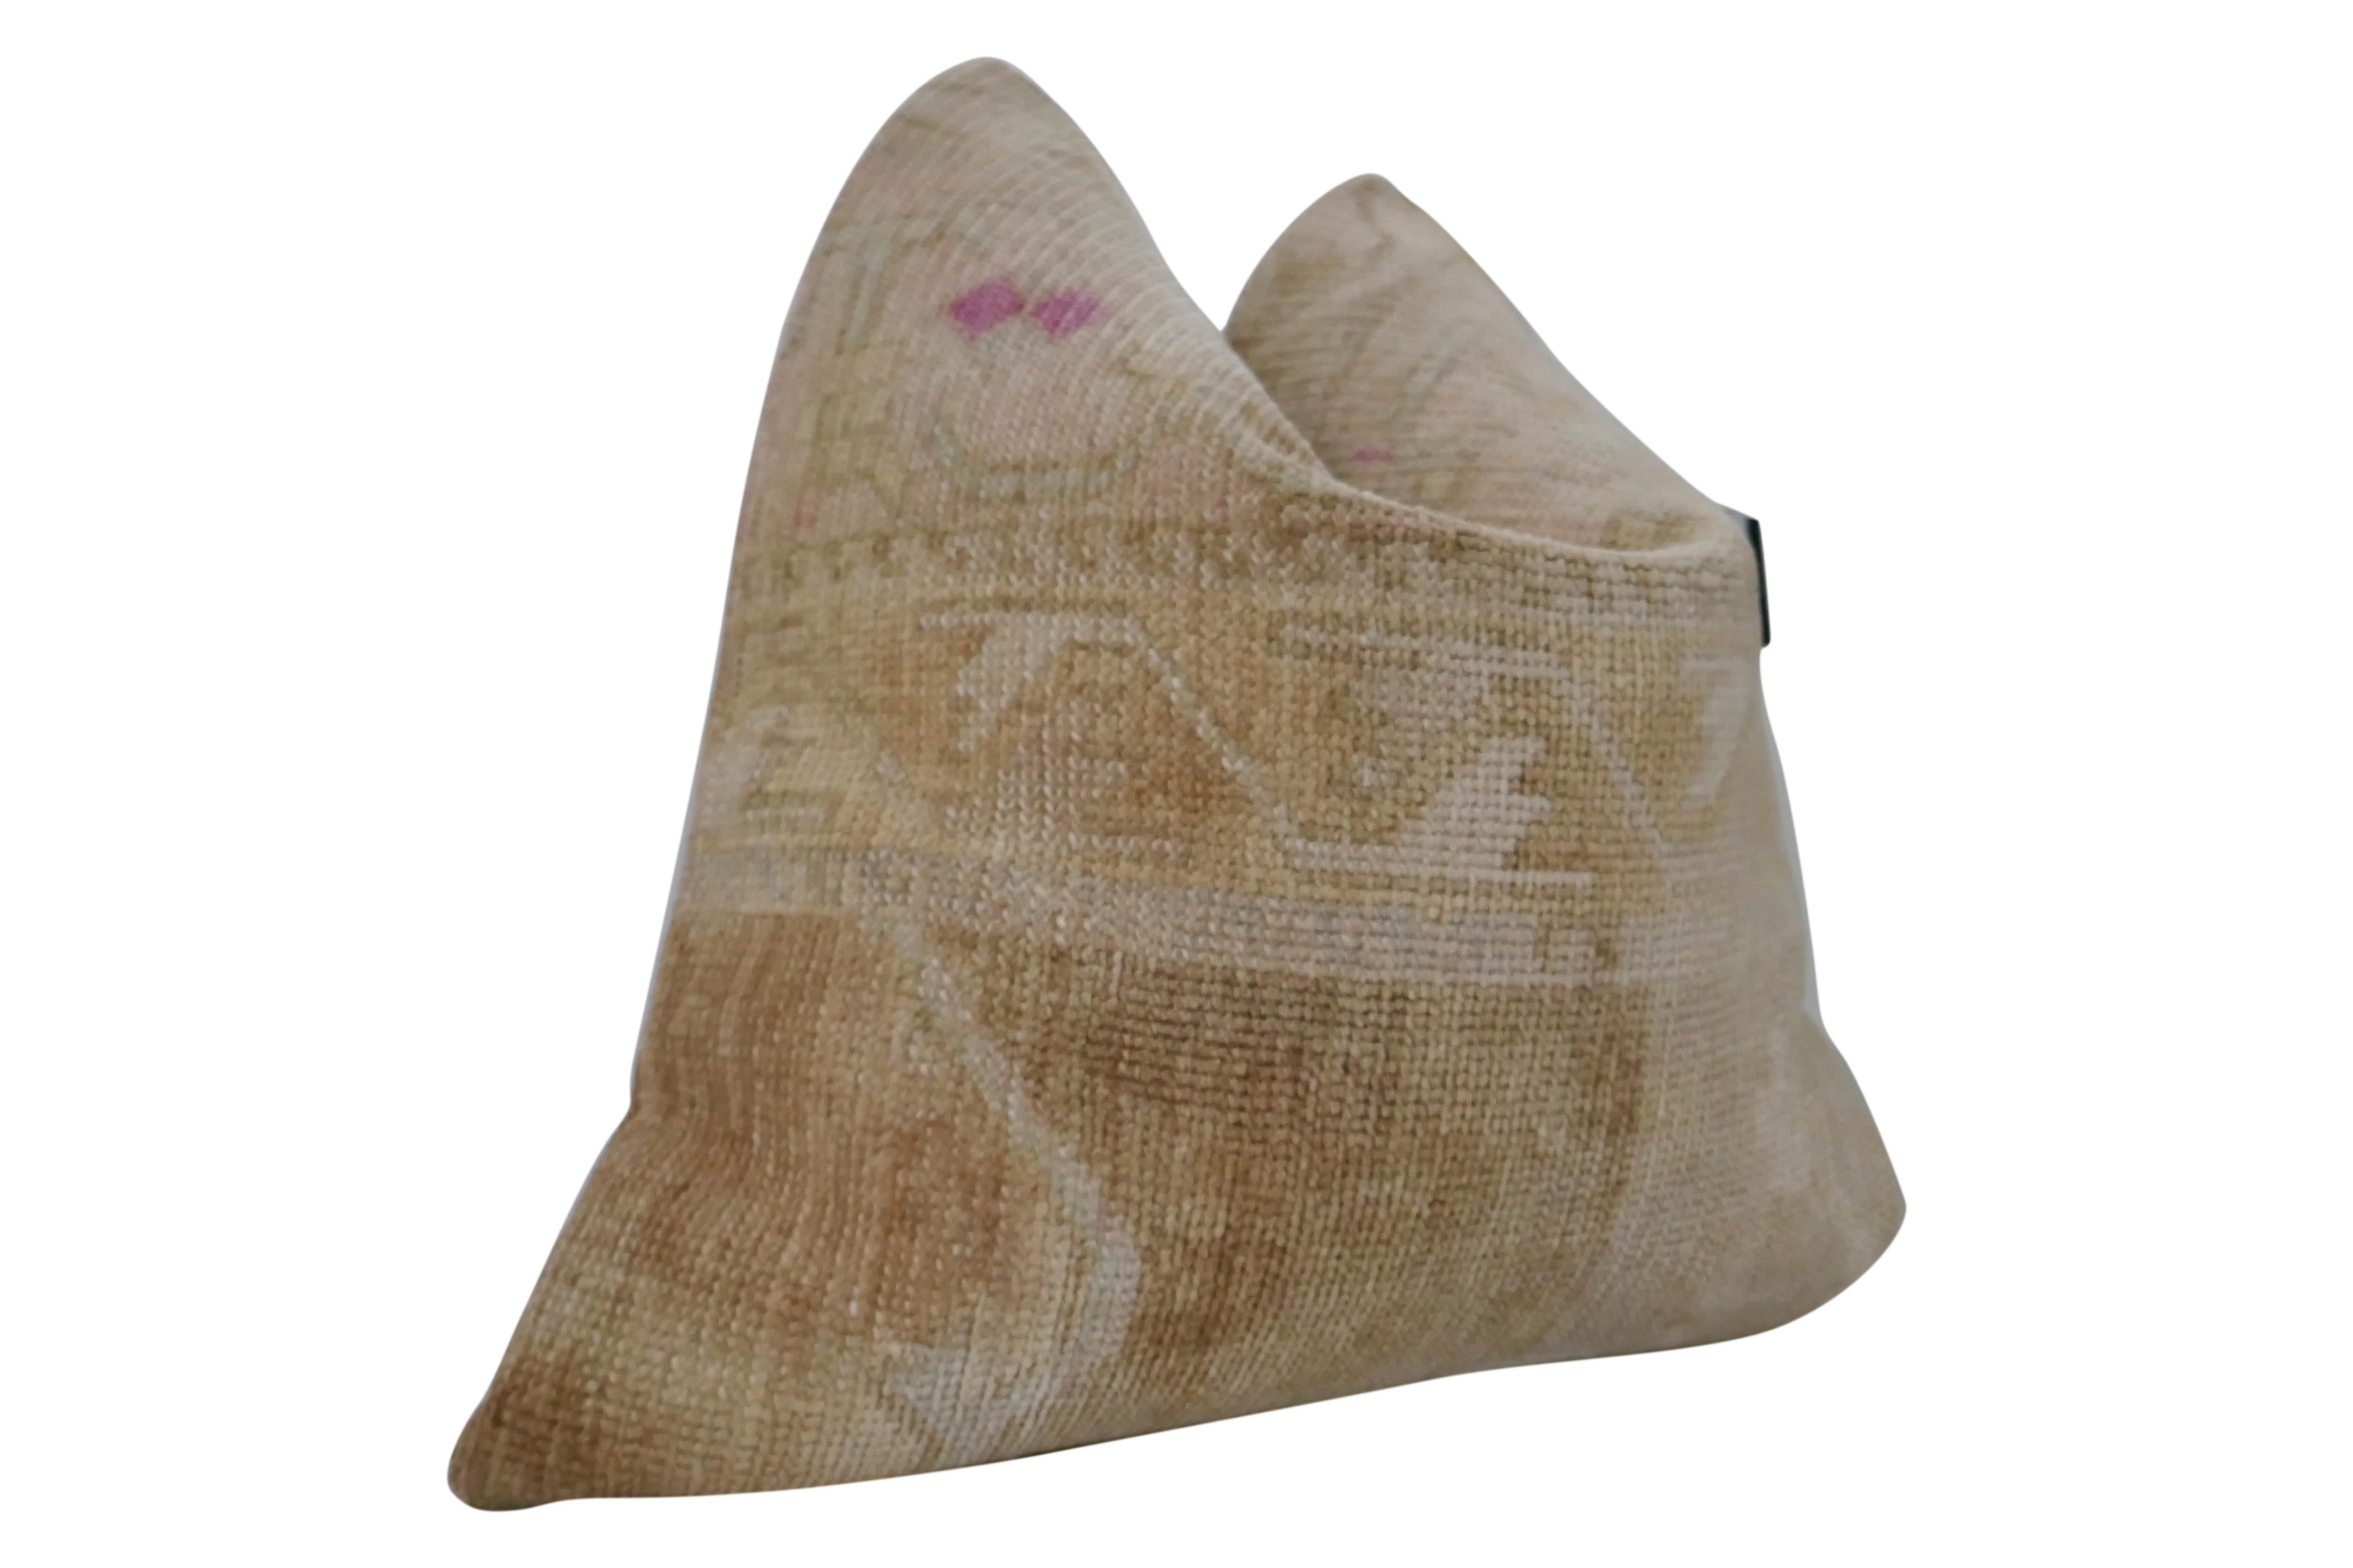 Fragments Identity authentique vintage Anatolian Kilim wool large pillow. Magnifique art textile, tissé à la main à partir de laine pure en un motif à la texture lourde et aux motifs complexes, créant des tons et des textures étonnants. Ces textiles